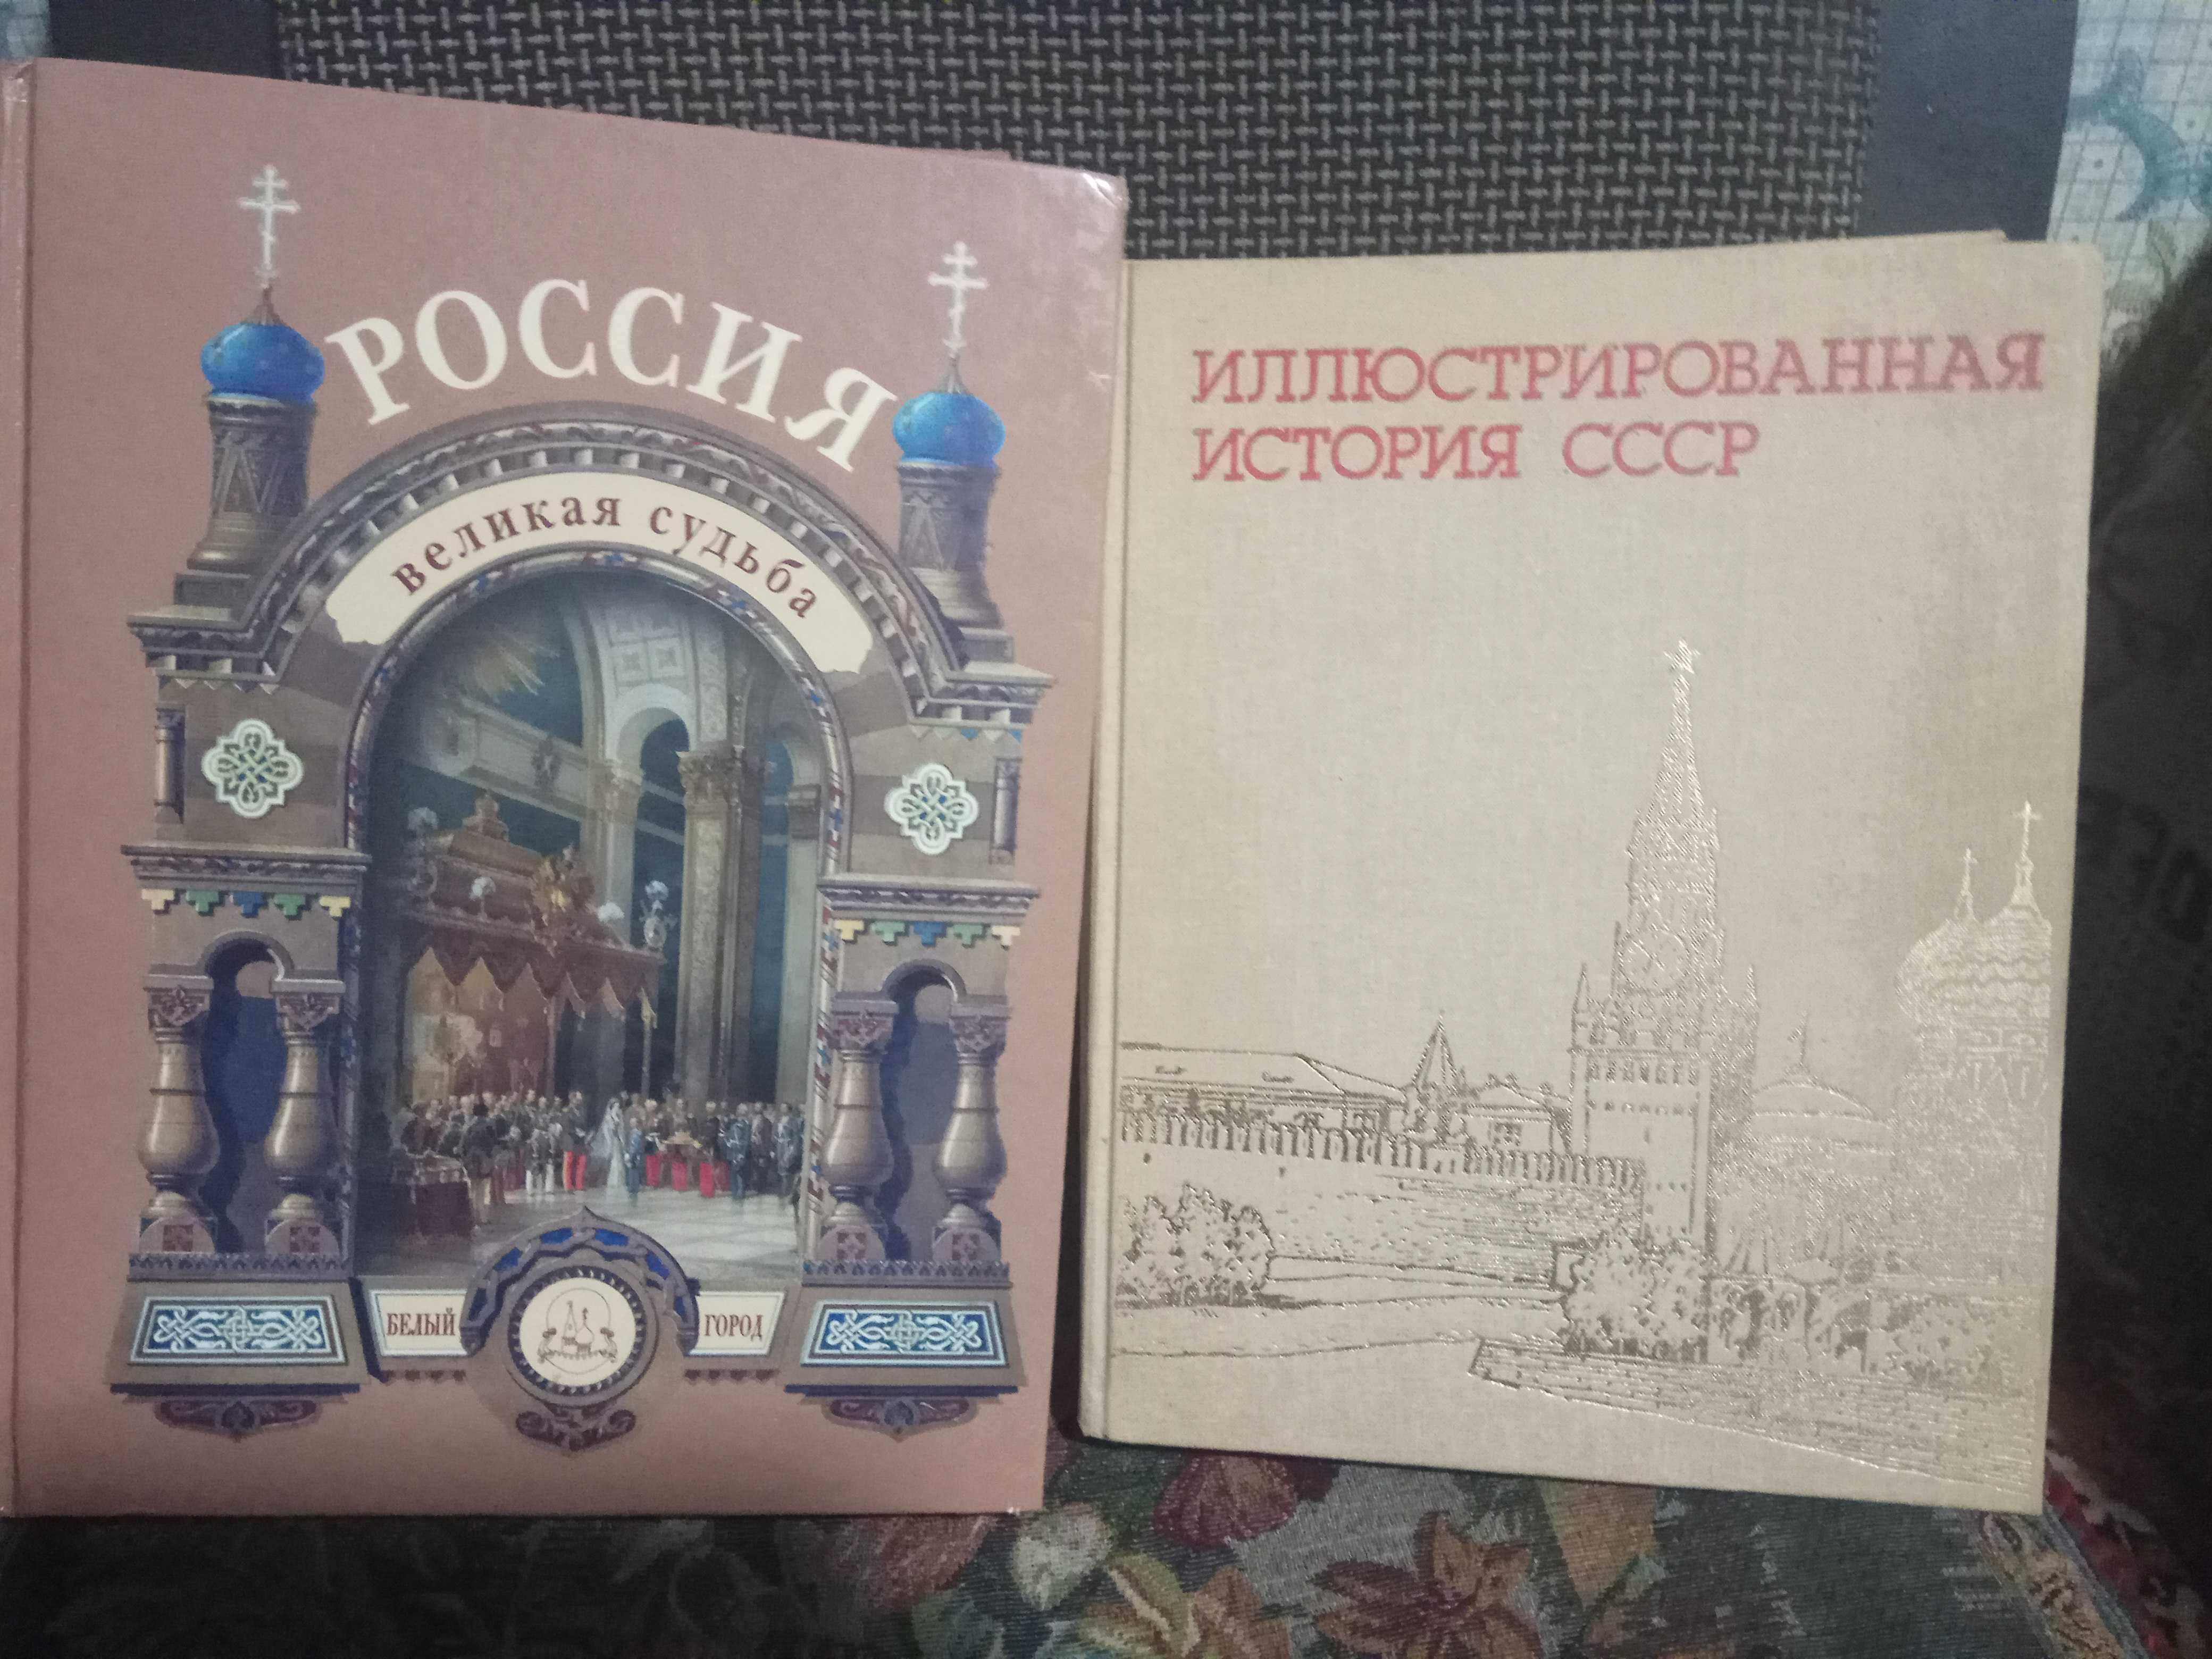 Иллюстрированная история СССР  и Россия Великая судьба